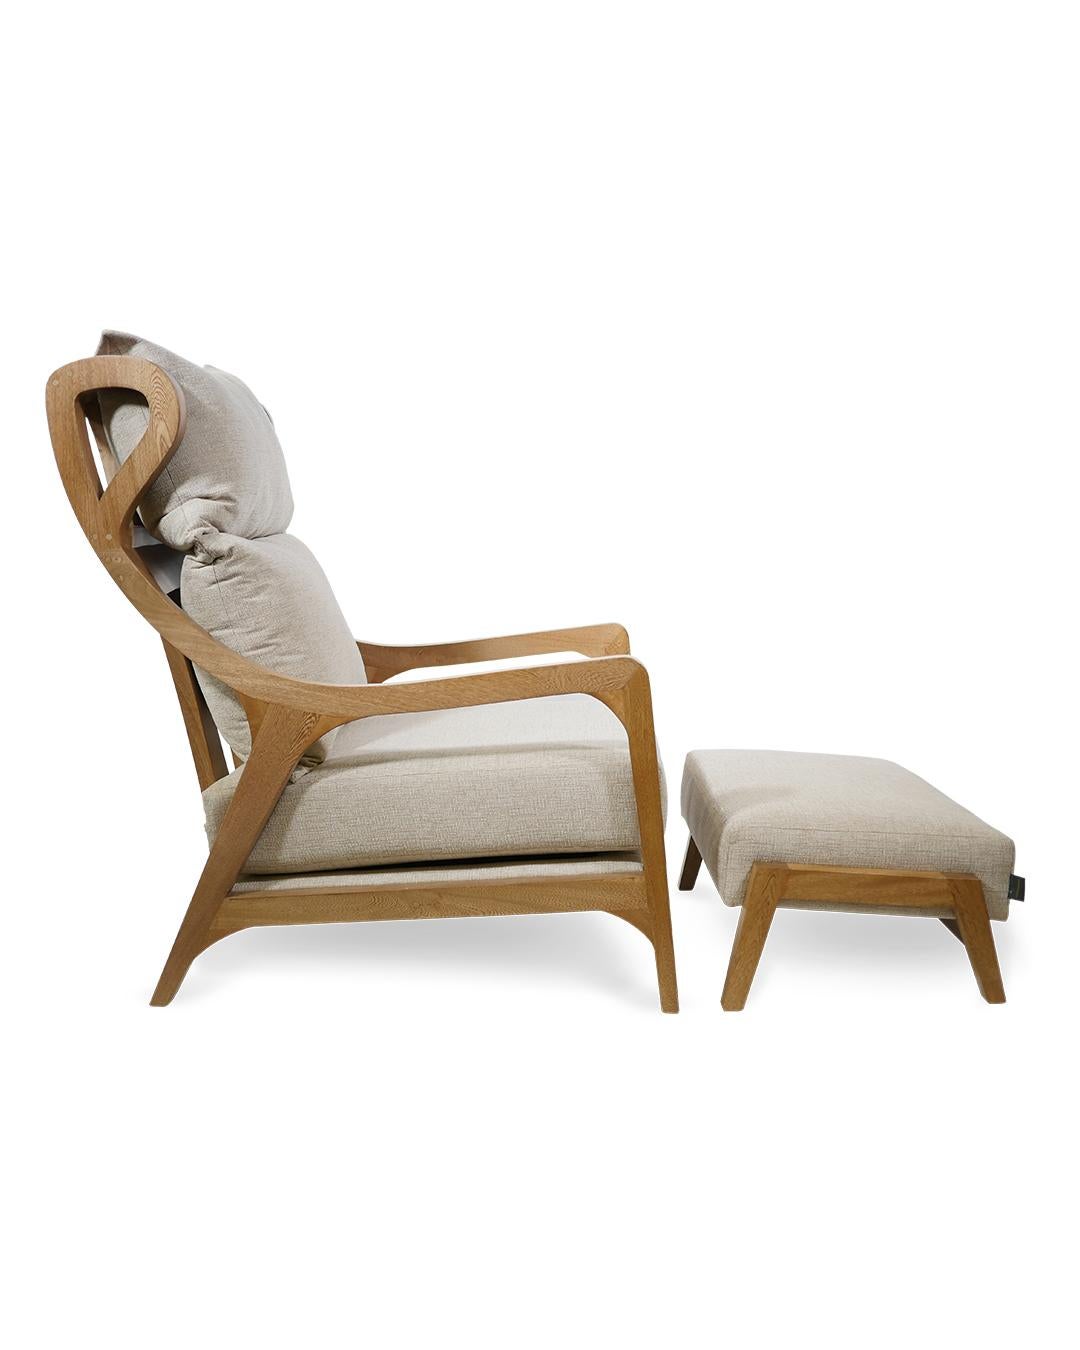 Ein moderner Sessel, ideal zum Entspannen, Lesen oder für ein Nickerchen. 
Die Holzarbeiten sind wunderschön und werden in Ihrem Wohn- oder Schlafzimmer großartig aussehen. Bitte beachten Sie, dass dieser Sessel sehr hoch ist, er wurde so entworfen,